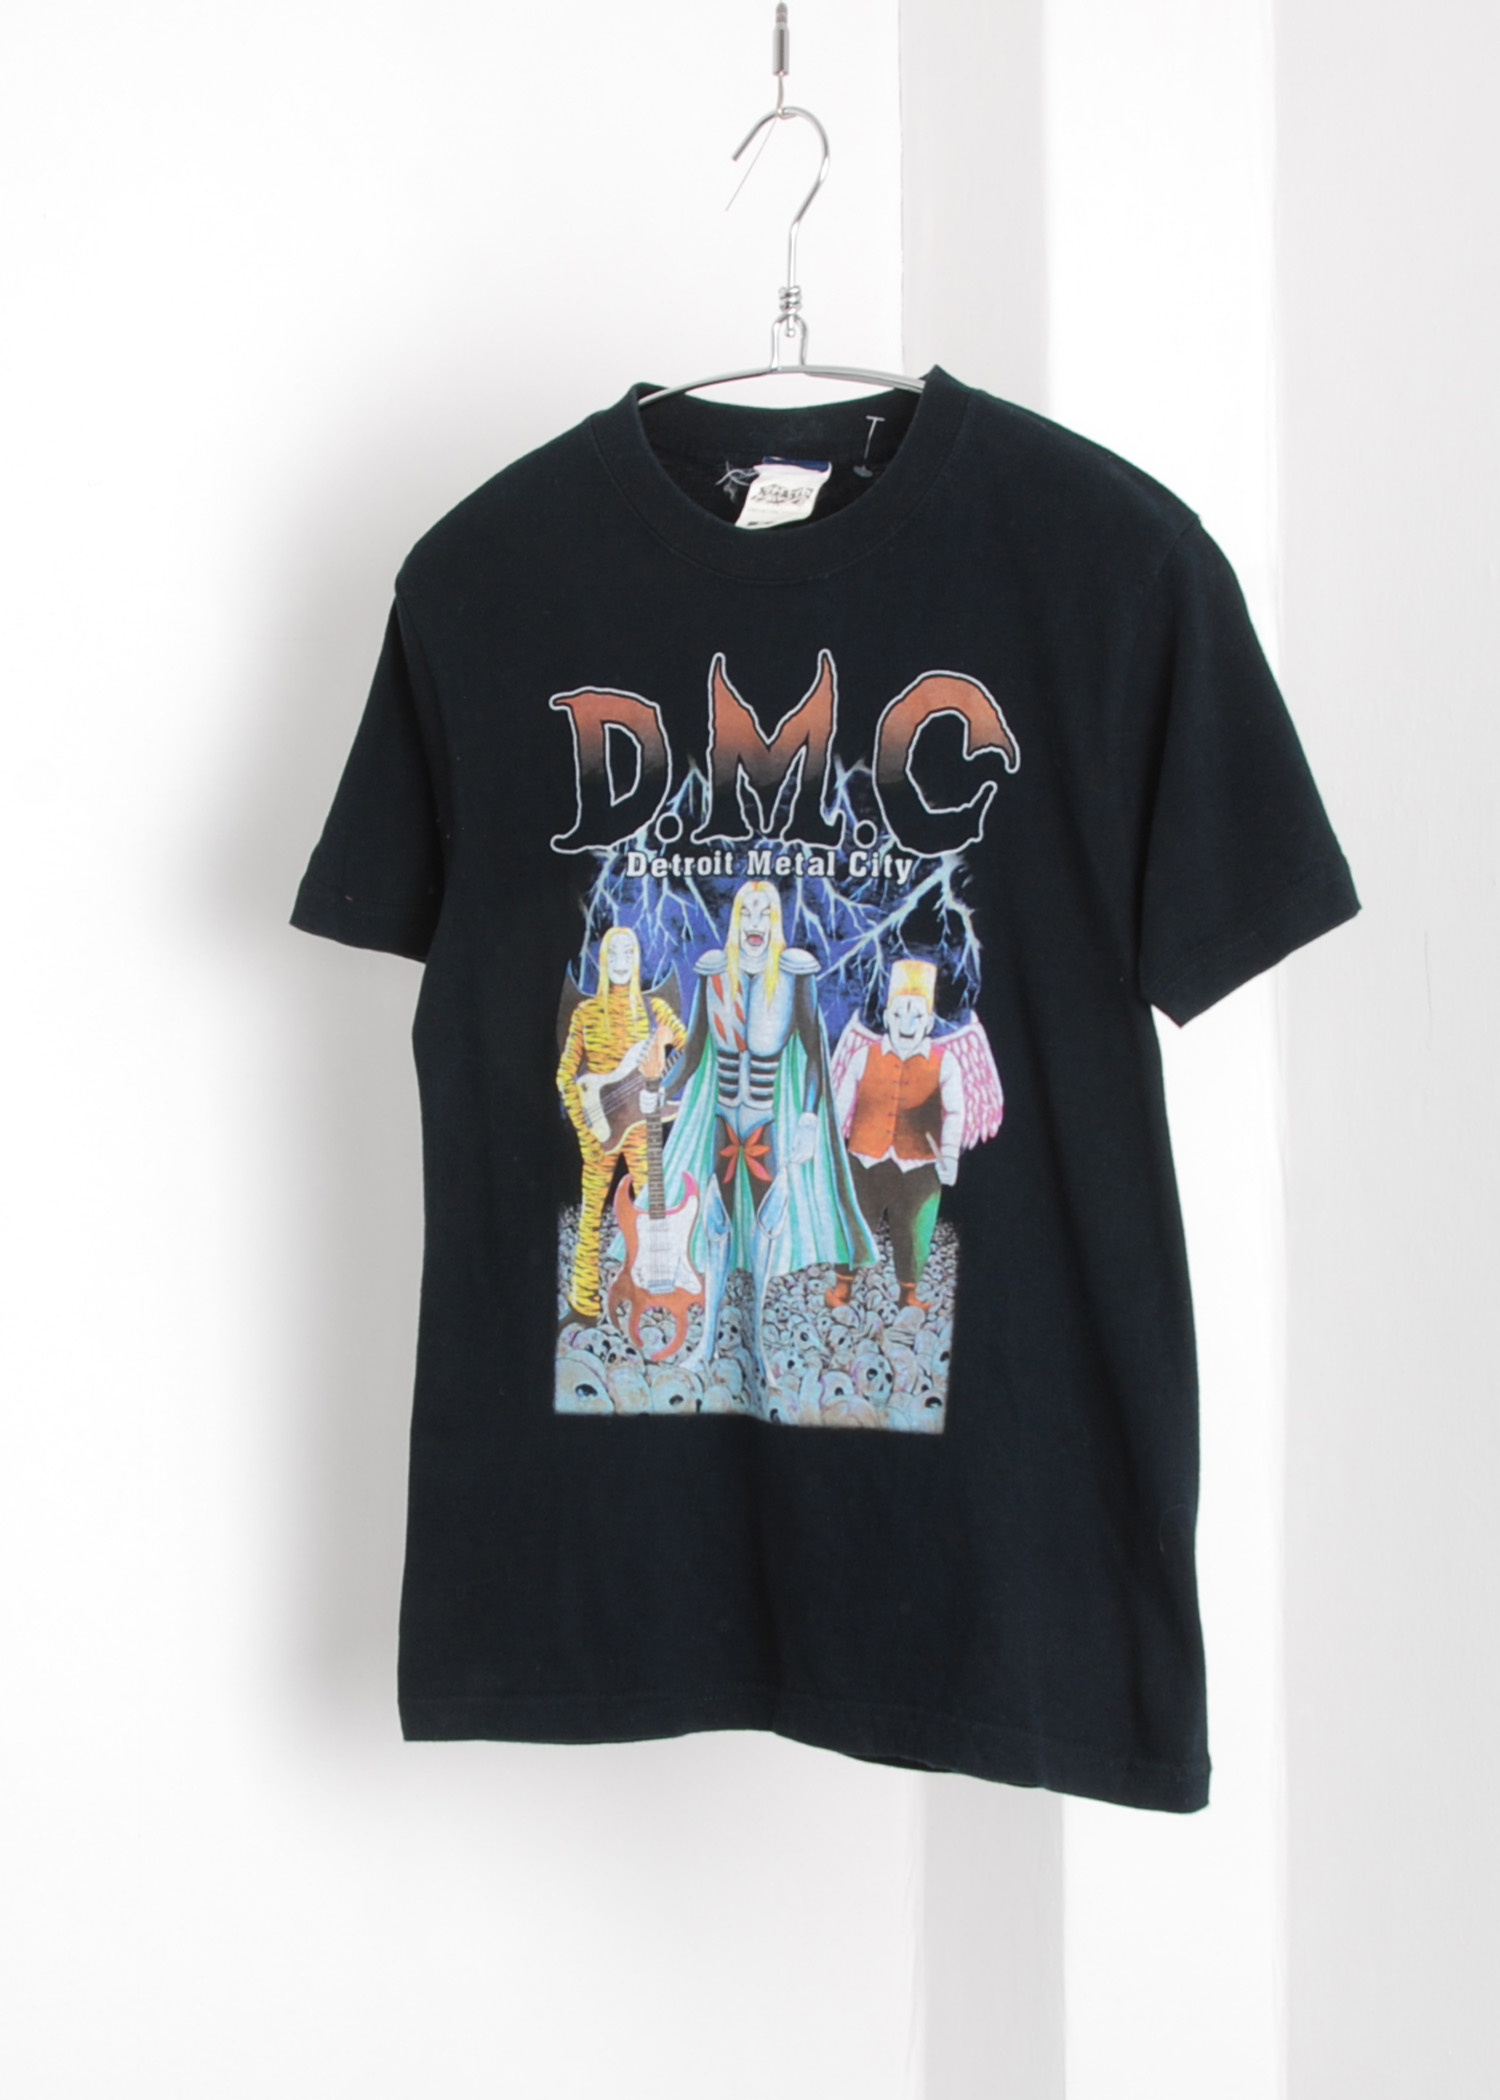 D.M.C (Detroit Metal City) t-shirts